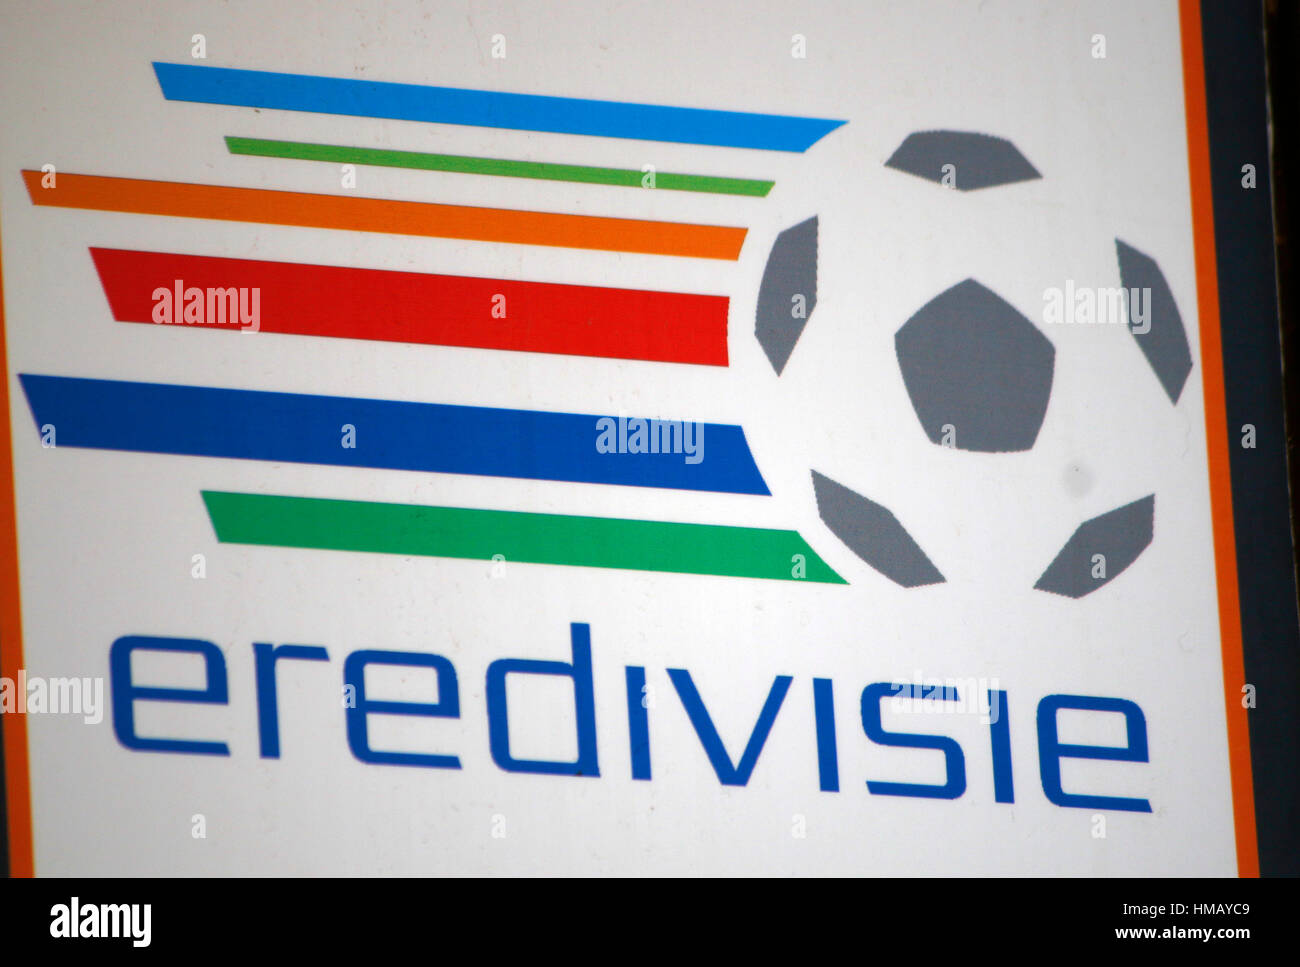 Das Logo der Marke "Eredivisie", Palma De Mallorca. Stockfoto